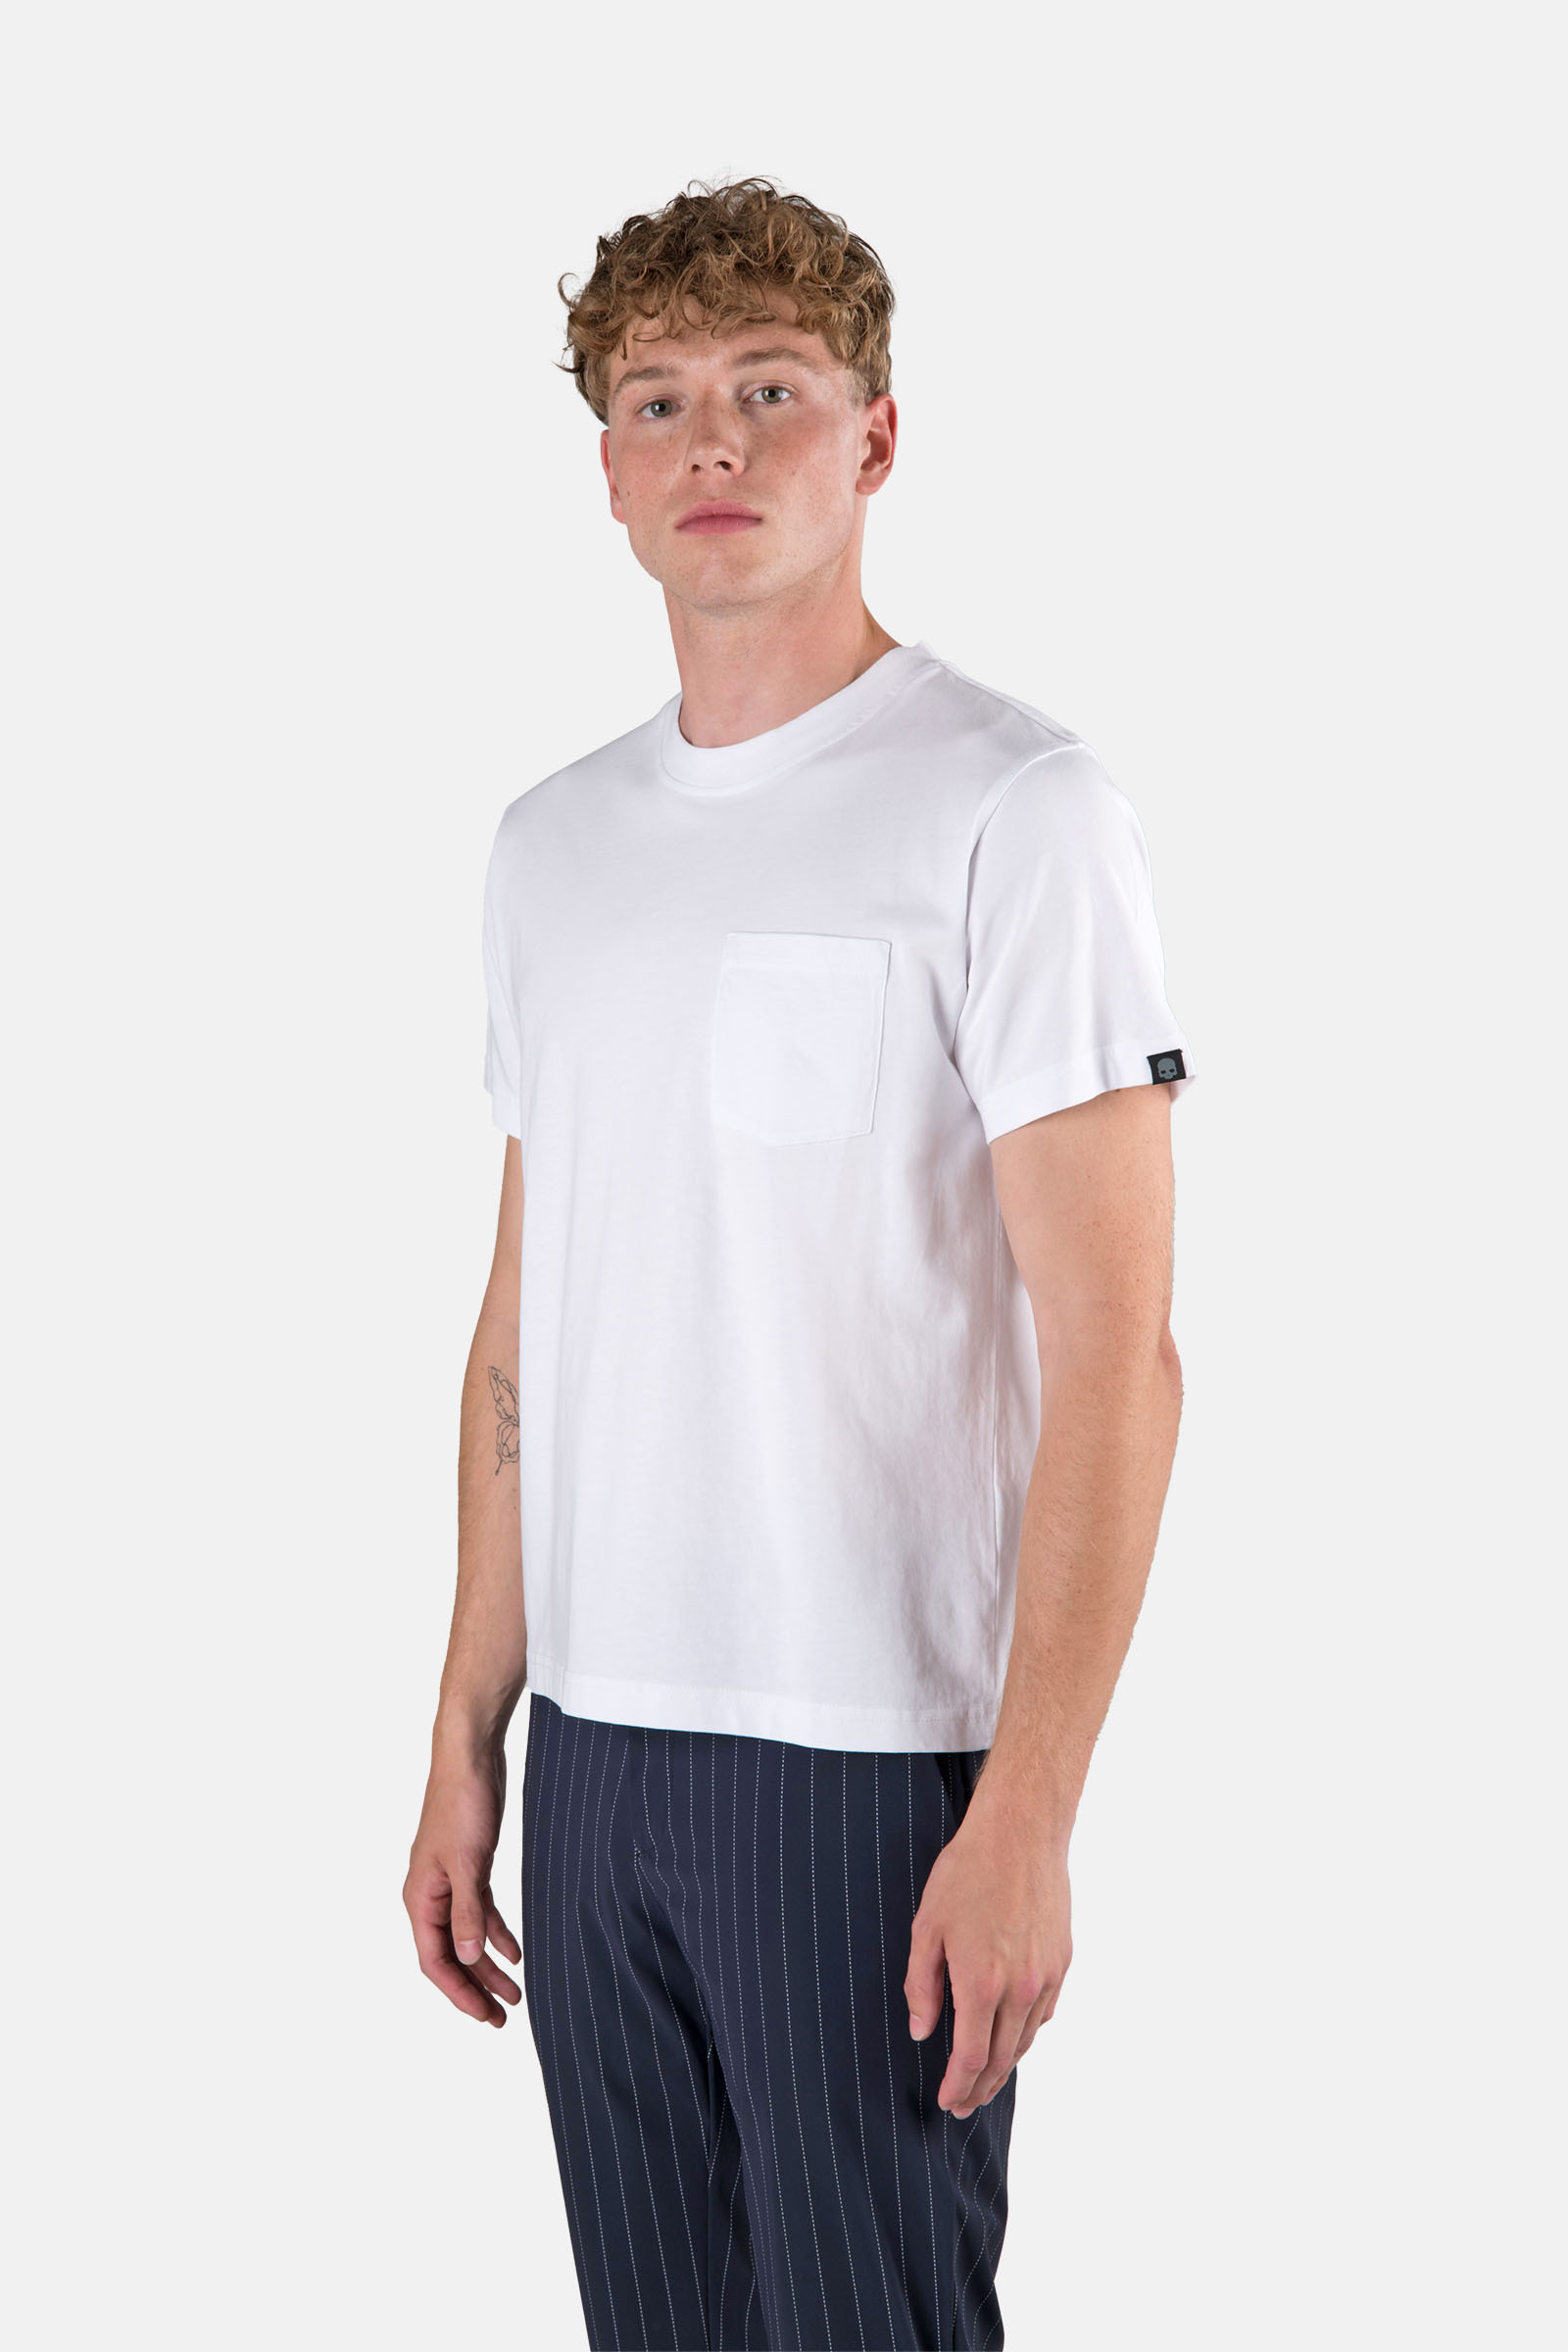 POCKET TEE - WHITE - Hydrogen - Luxury Sportwear